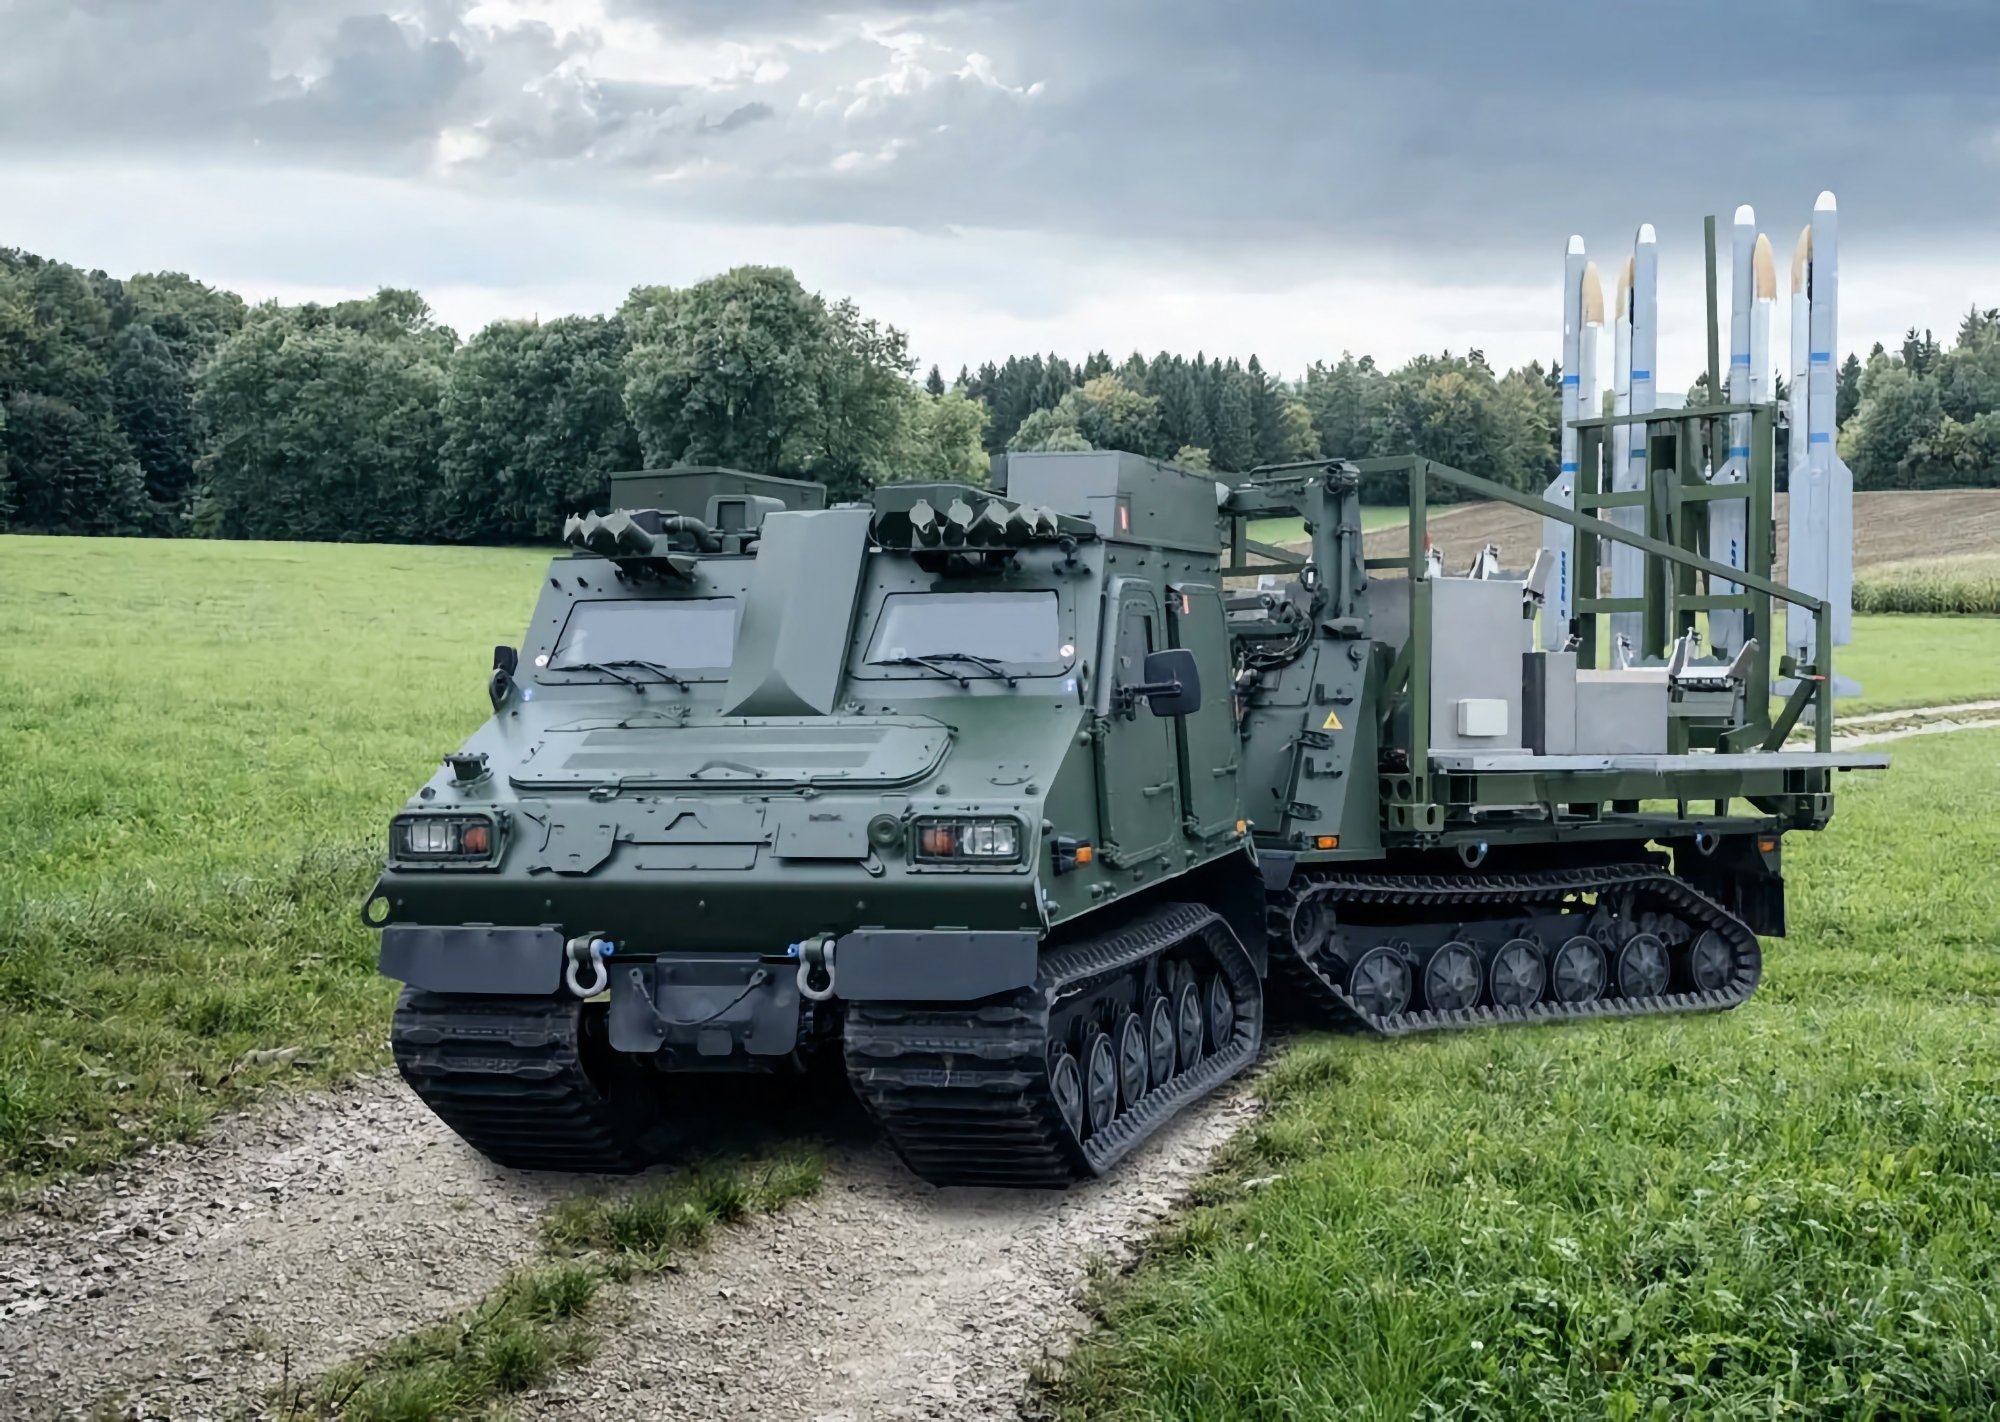 2 IRIS-T SLS SAM-bæreraketter, 8 PzH 2000 SAU for reservedeler og 4 HX81 stridsvogner: Tyskland har gitt Ukraina en ny våpenpakke